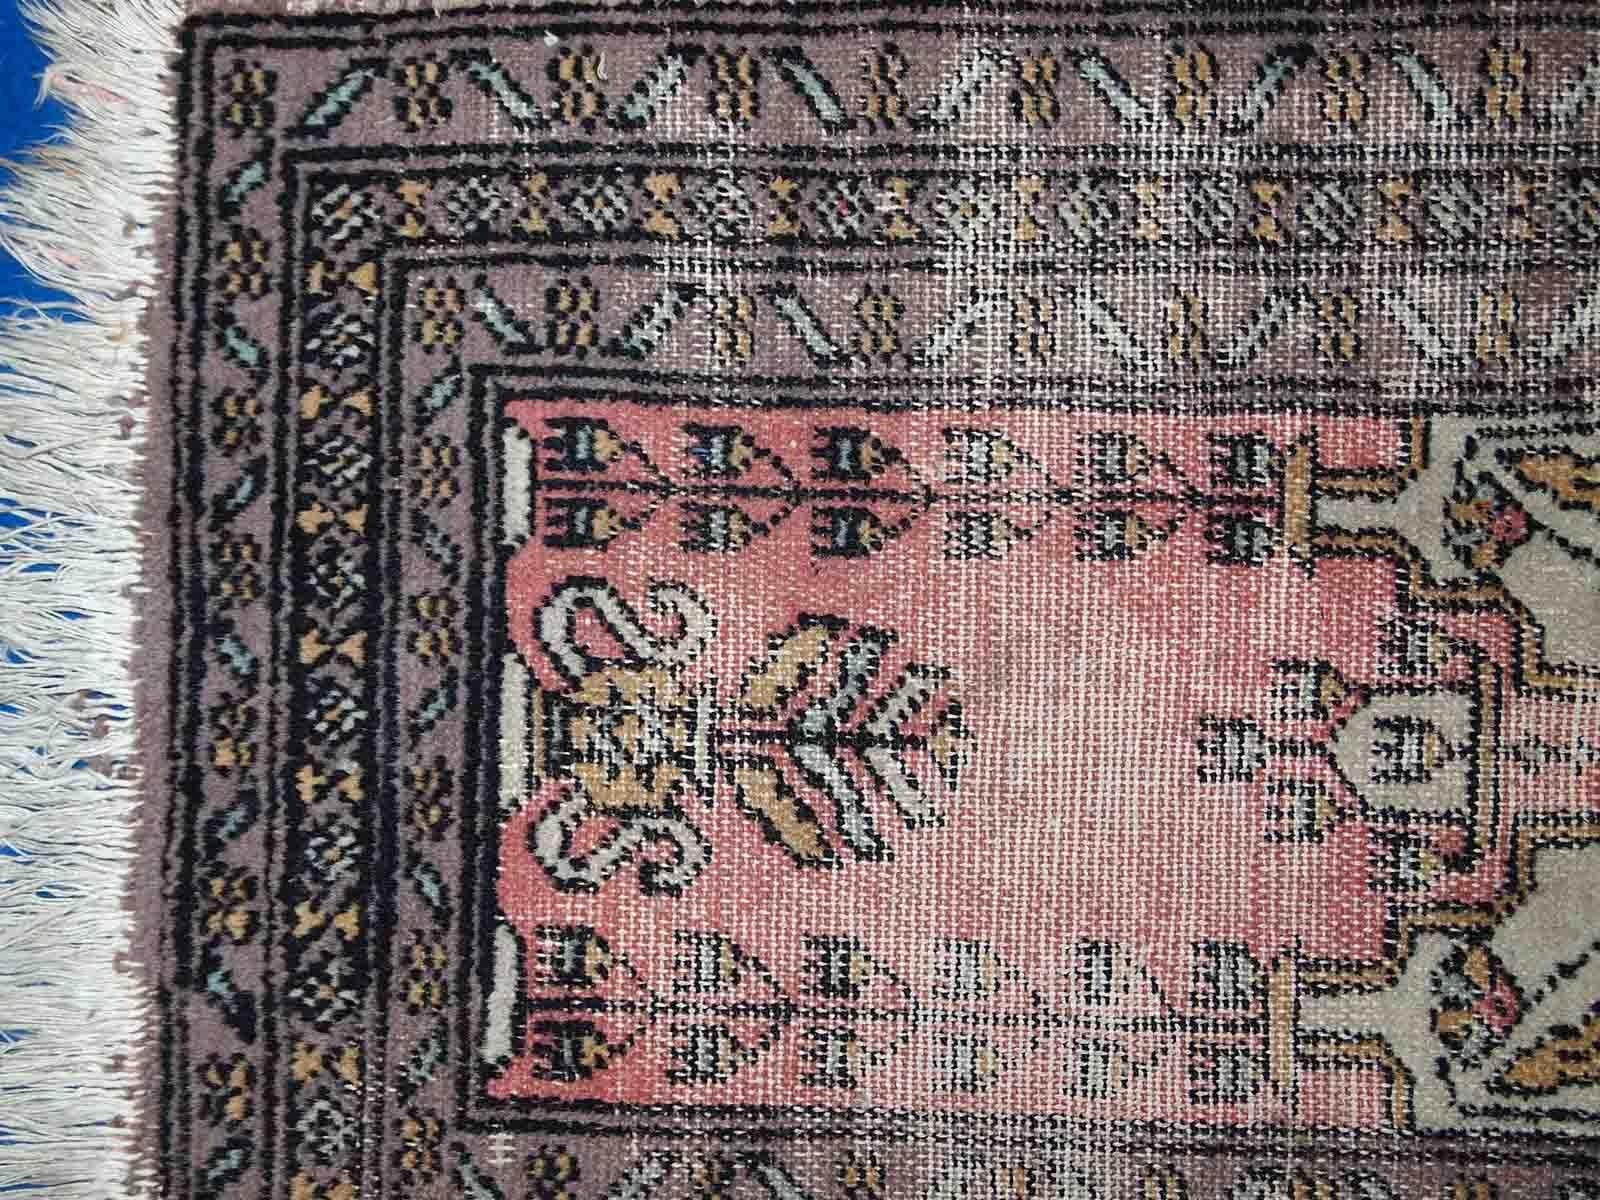 Vintage handgefertigte usbekische Buchara Gebetsmatte in beschädigtem Zustand. Der Teppich stammt aus dem Ende des 20. Jahrhunderts.

-Zustand: notleidend, 

-CIRCA: 1950er Jahre,

-Größe: 1,5' x 1,8' (46cm x 56cm),

-MATERIAL: